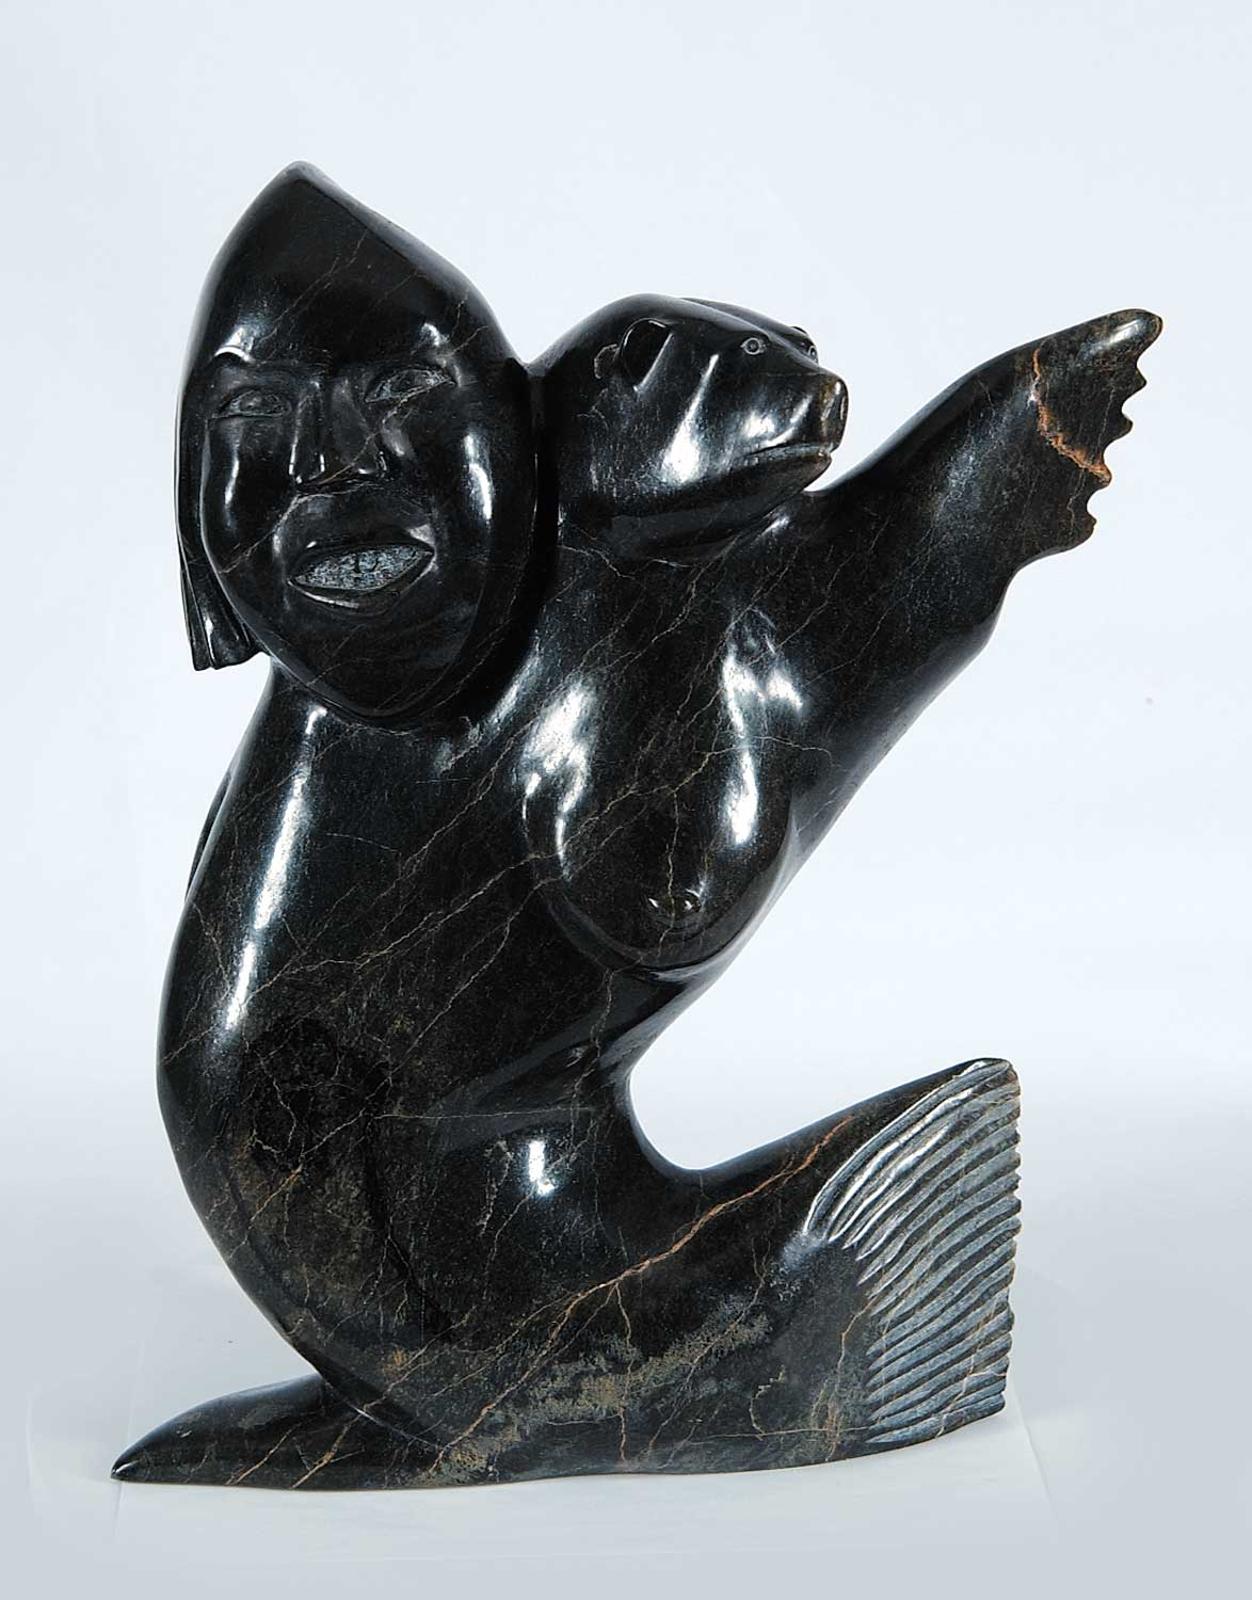 Qimirpik - Untitled - Sedna - Female Spirit Figure